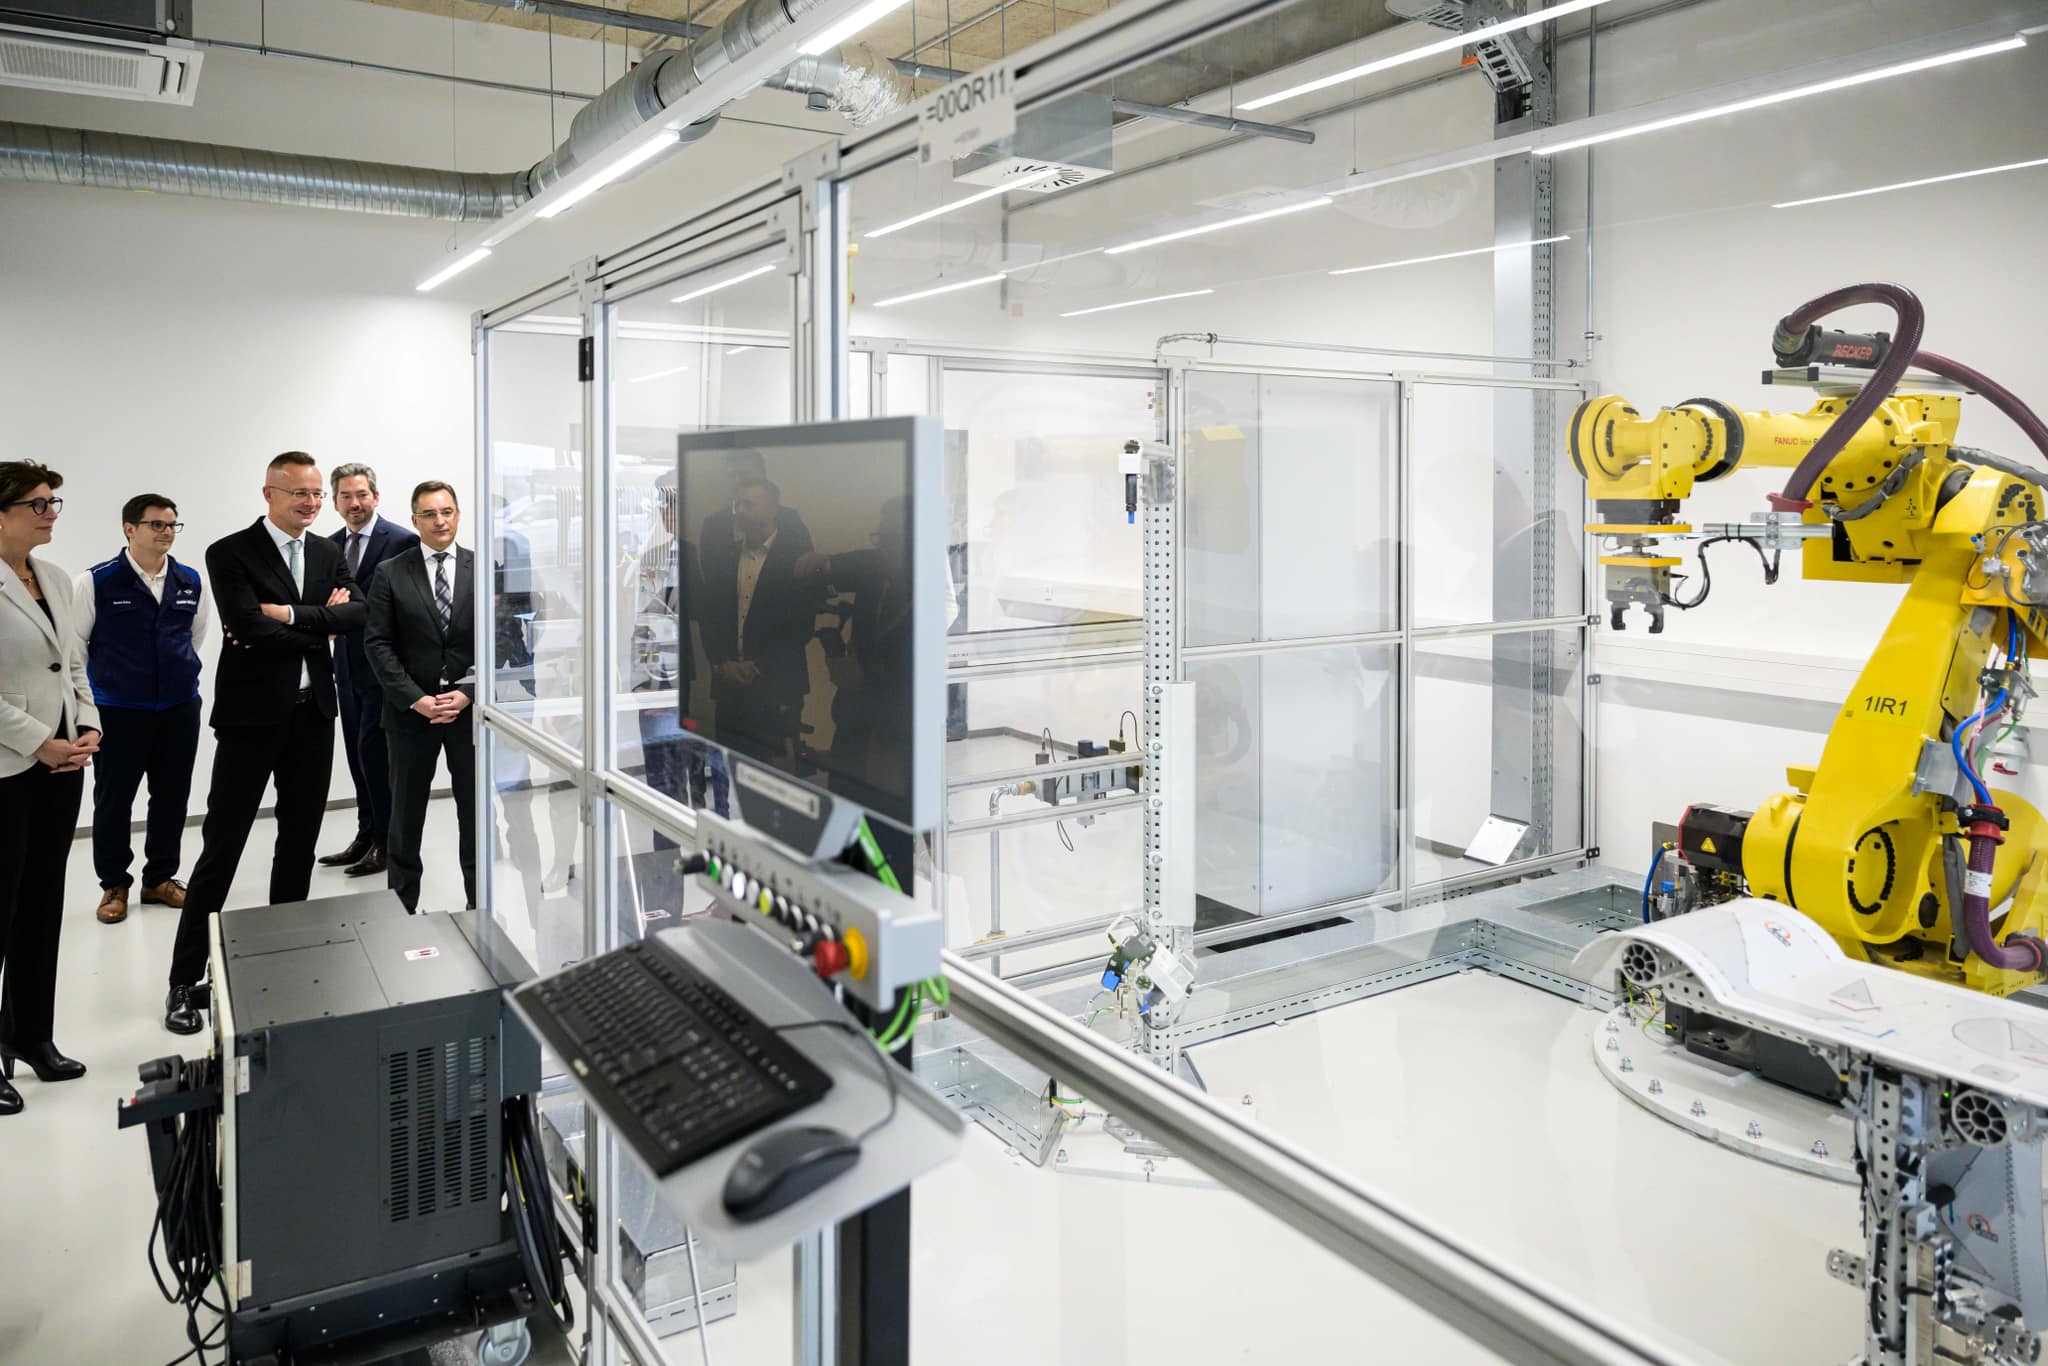 Neues BMW-Ausbildungszentrum: Deutsche Spitzentechnologie trifft ungarische Zuverlässigkeit